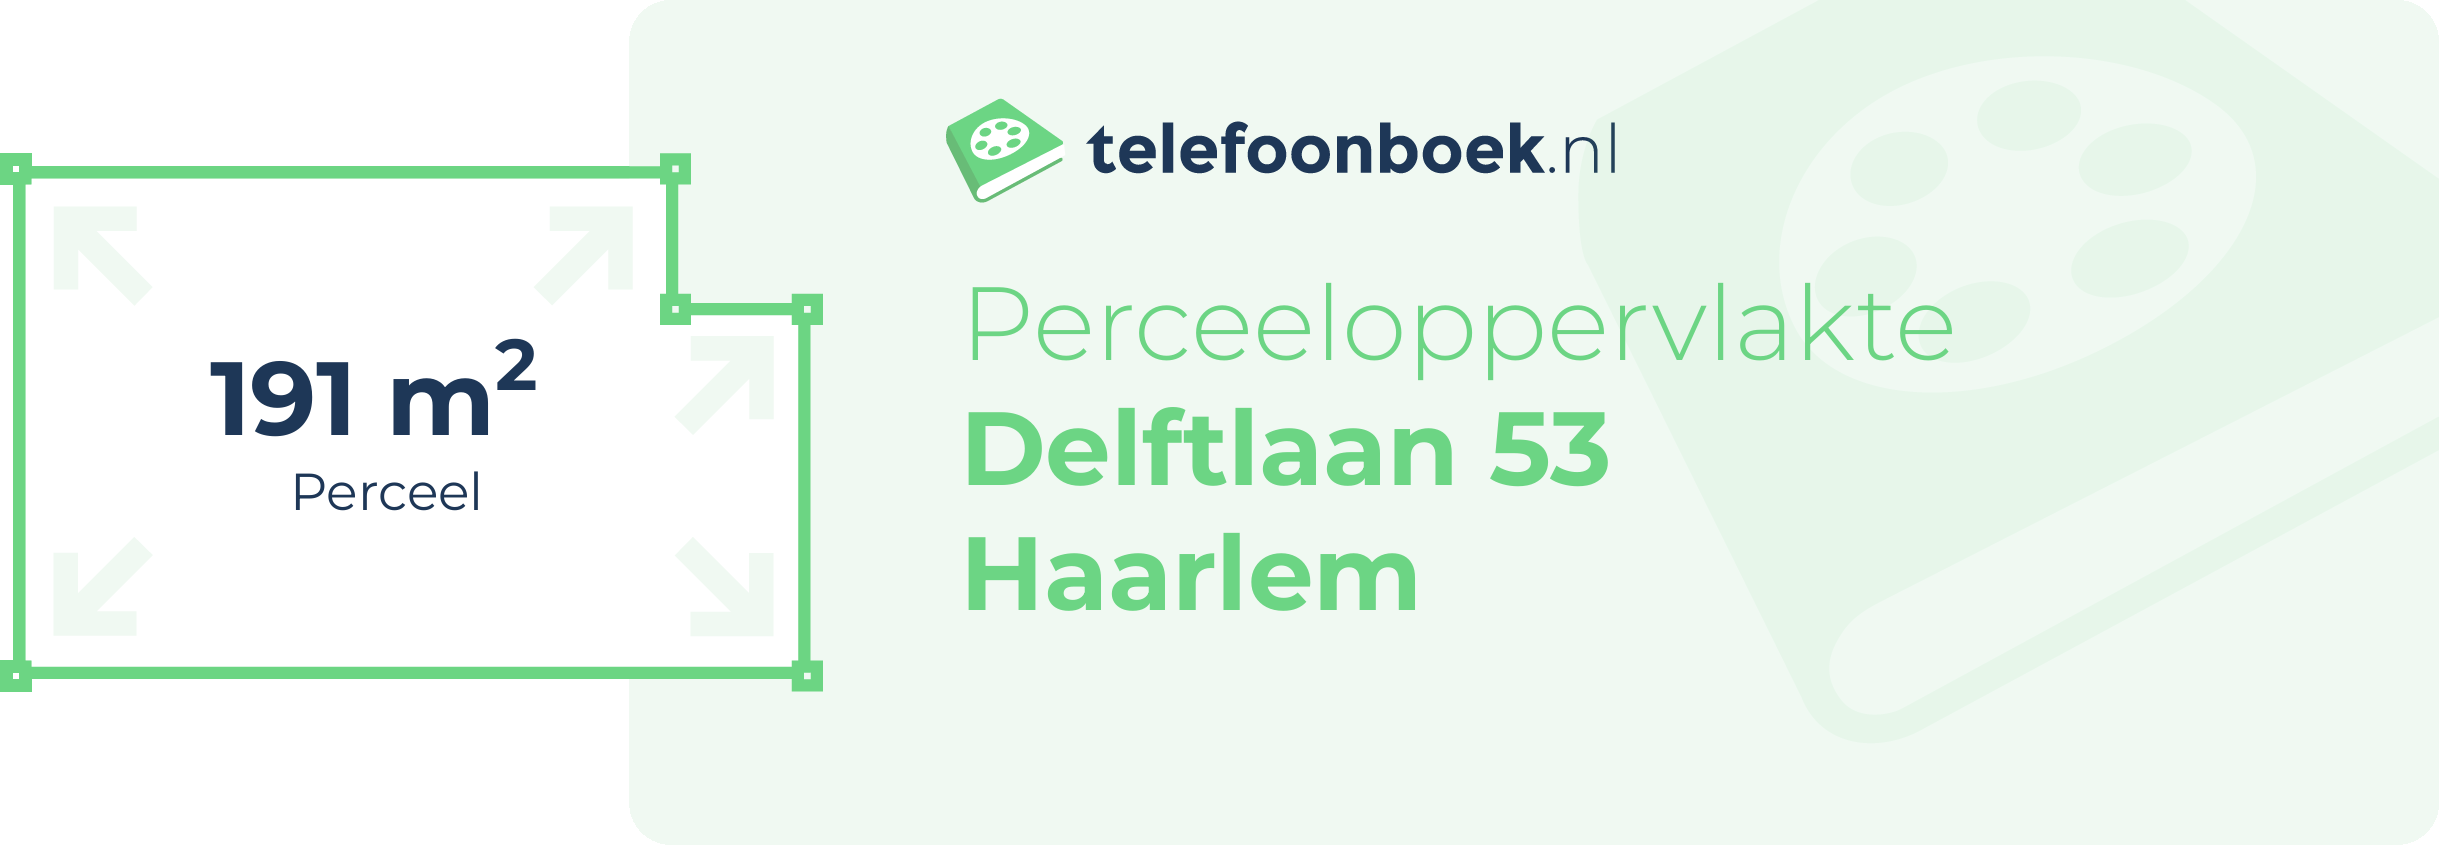 Perceeloppervlakte Delftlaan 53 Haarlem